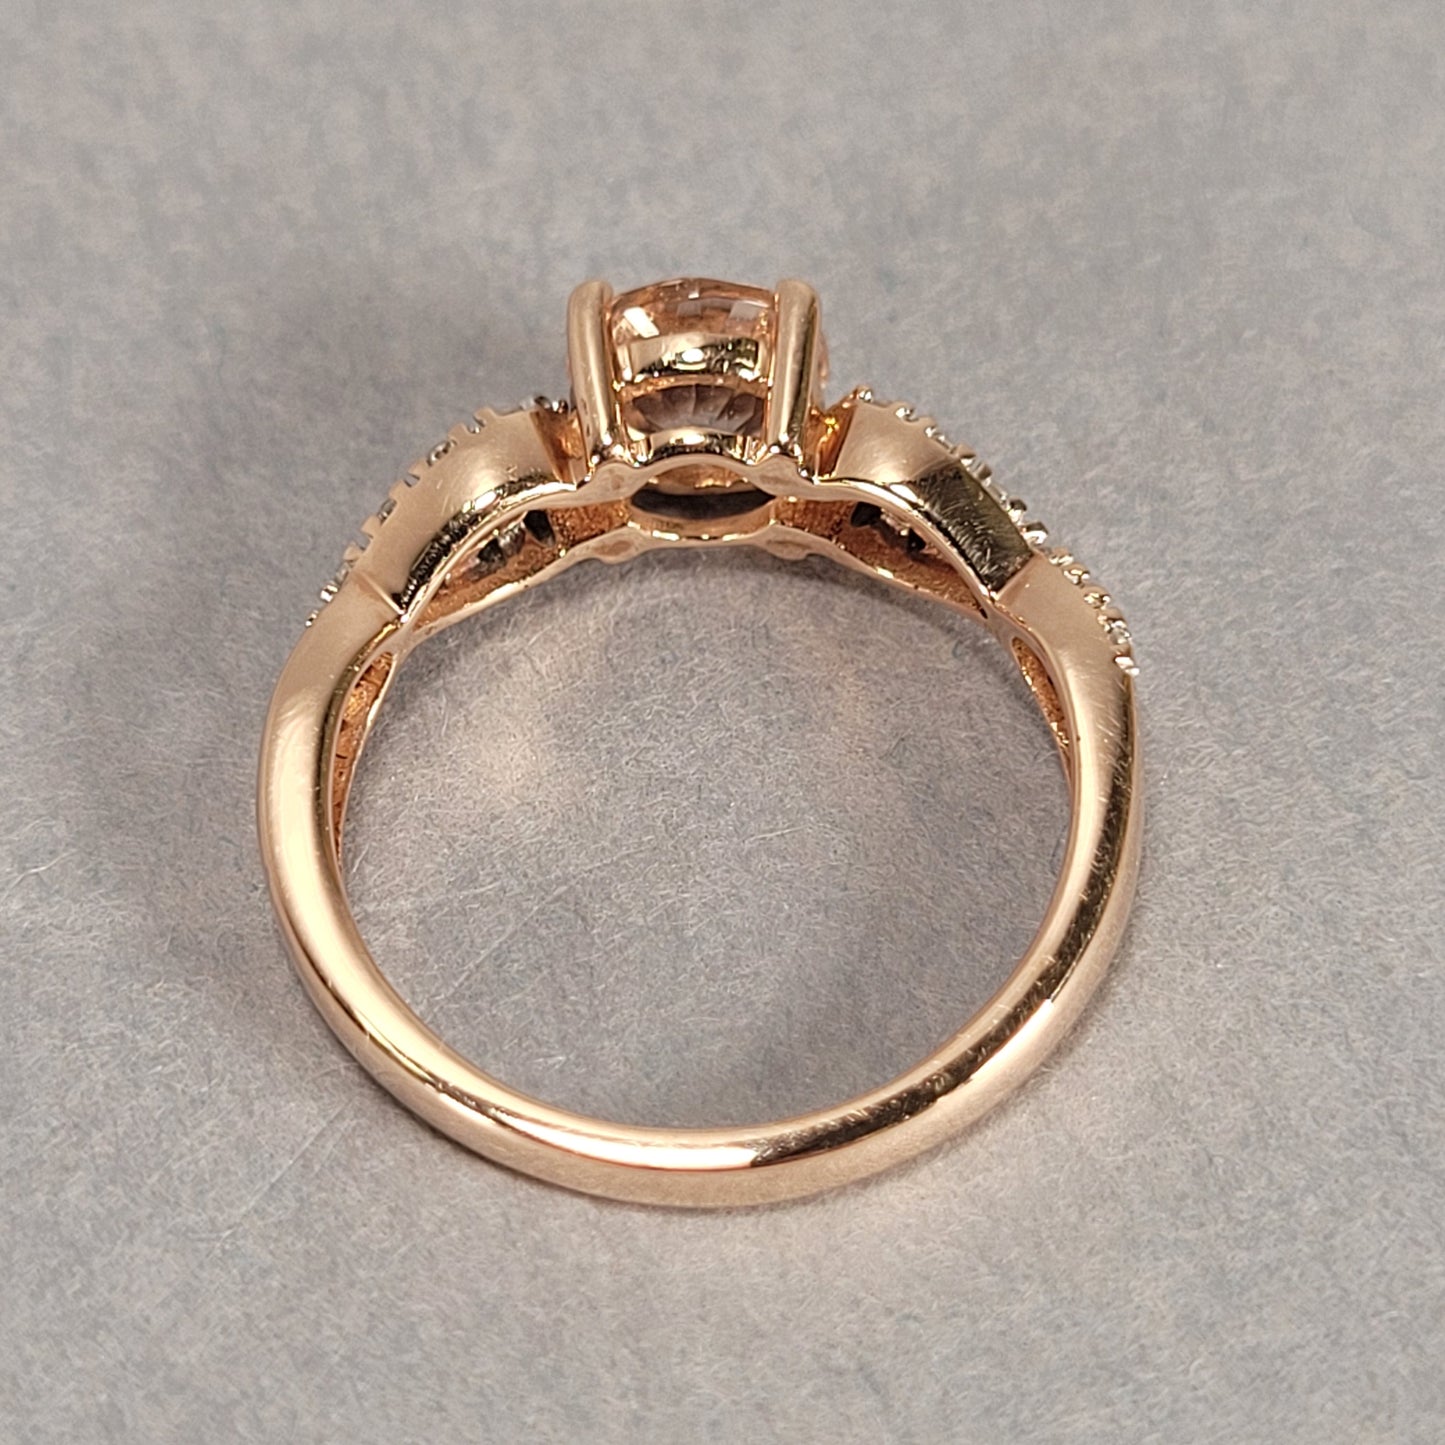 10k Rose Gold Diamond & Tanzanite Ring 2.3g